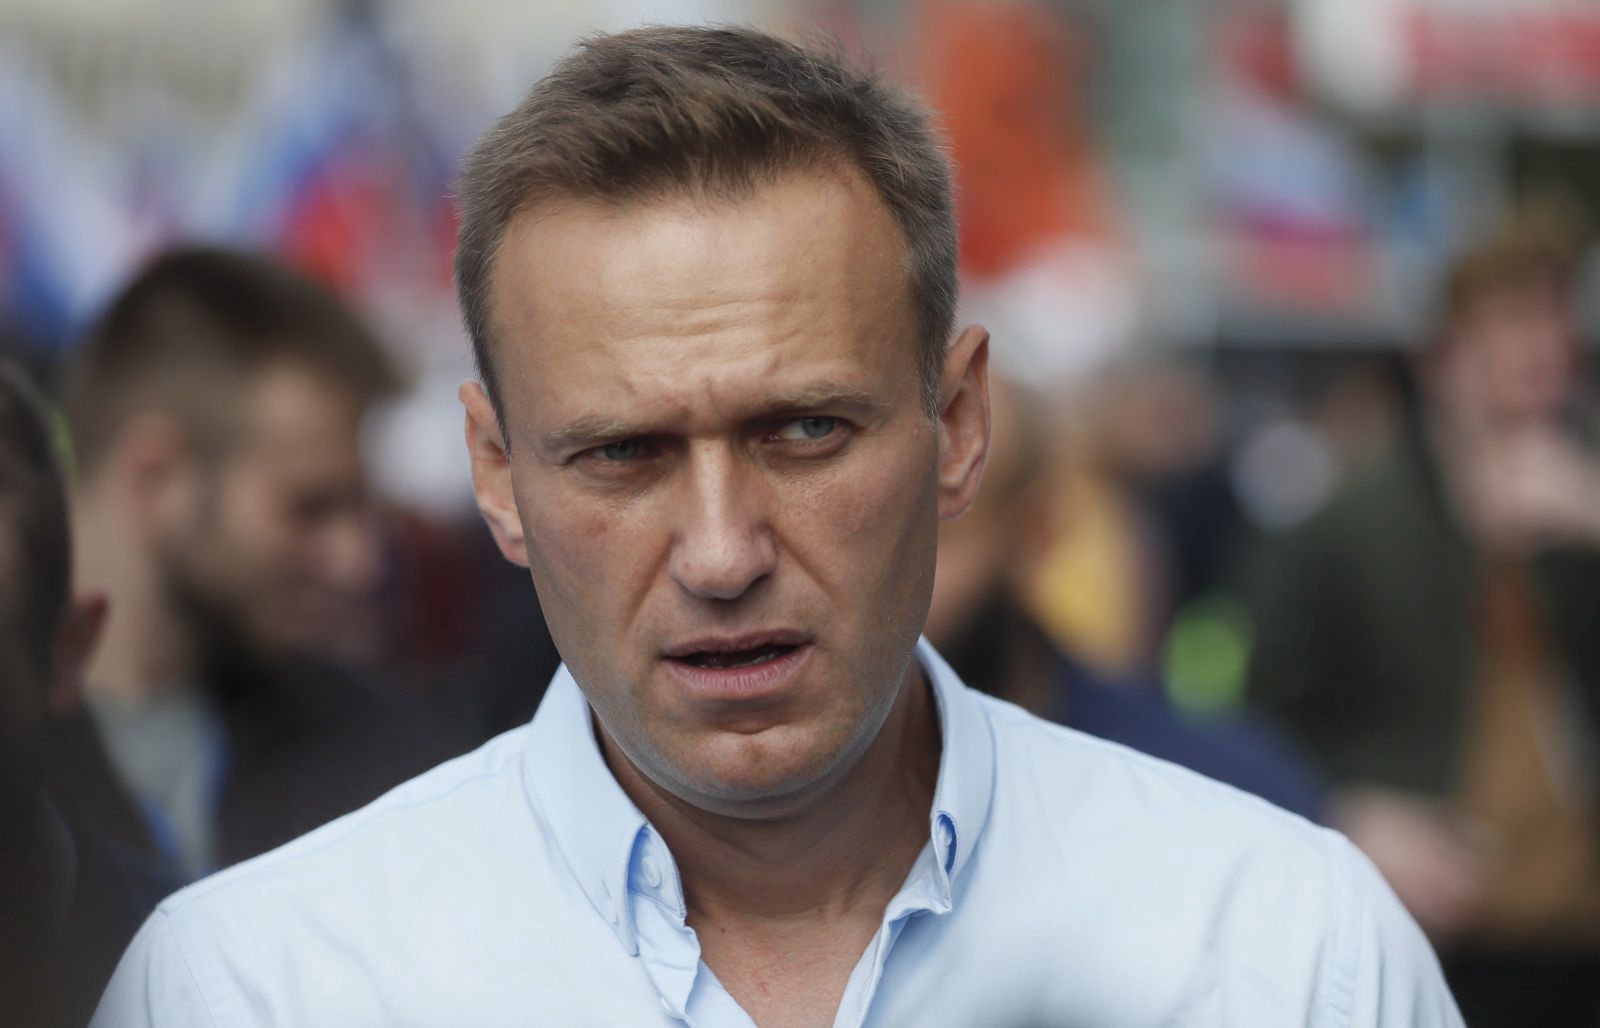 Oficjalnie: Aleksiej Nawalny został otruty. To znana substancja